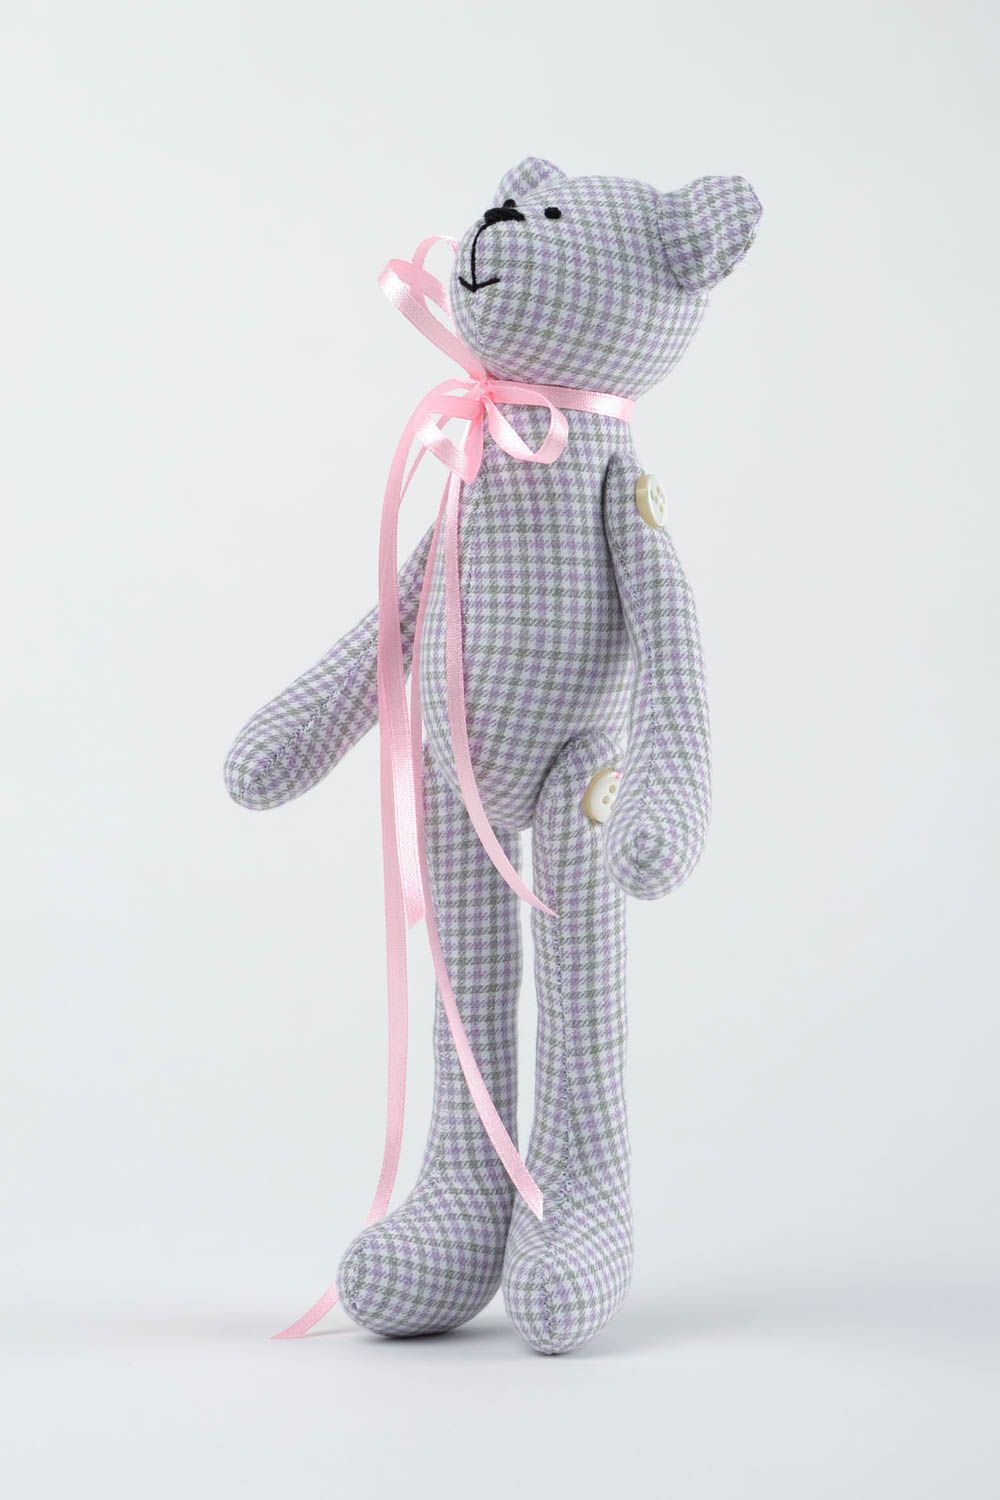 Игрушка мишка из хлопка игрушка ручной работы с лентой интересный подарок фото 4